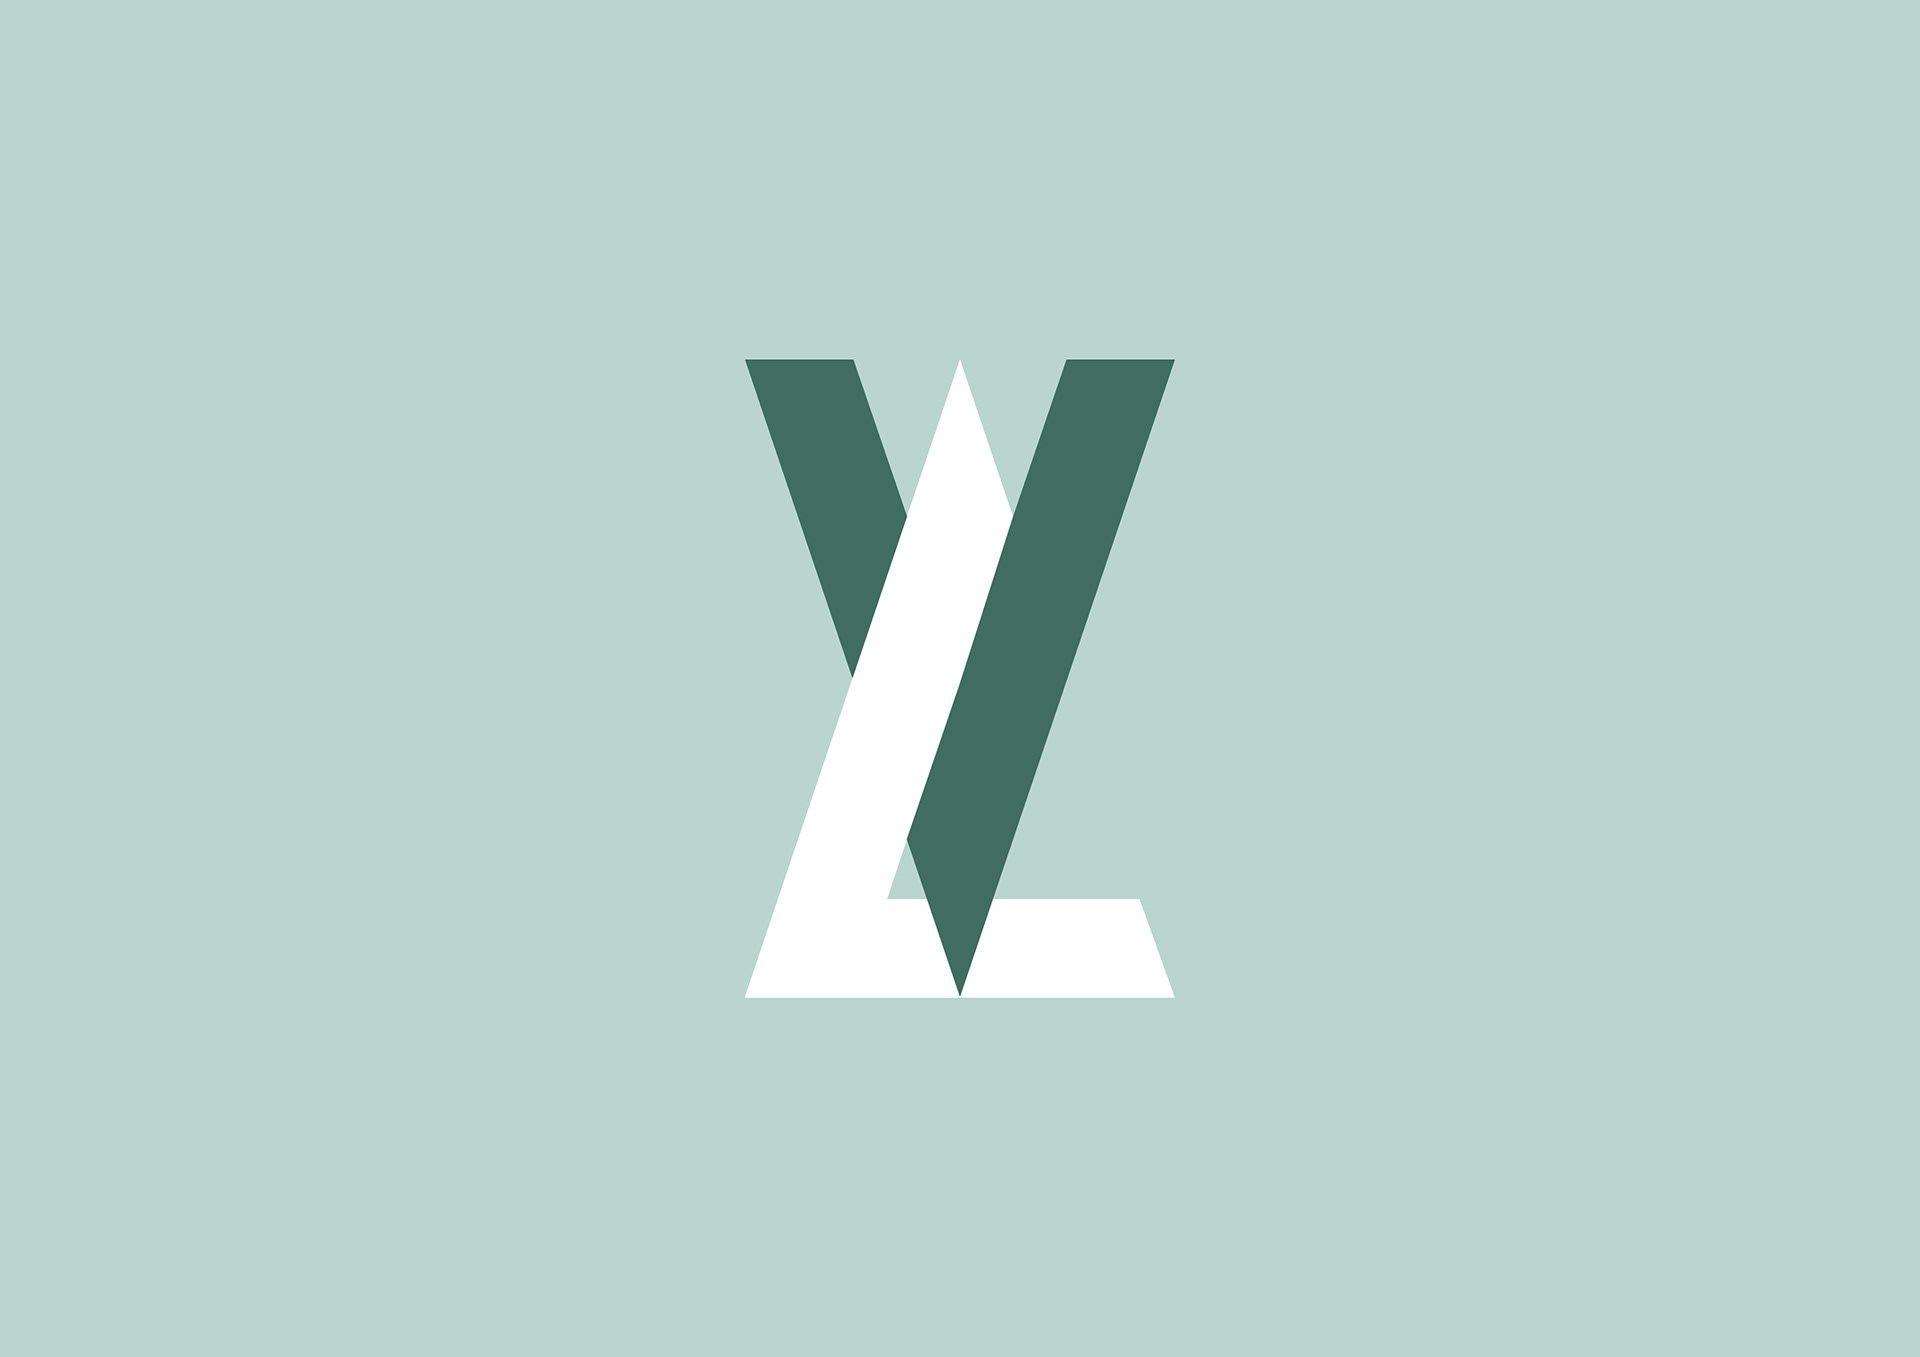 VL Logo - Maurizio Pagnozzi - VL // Vittoria Lombardi